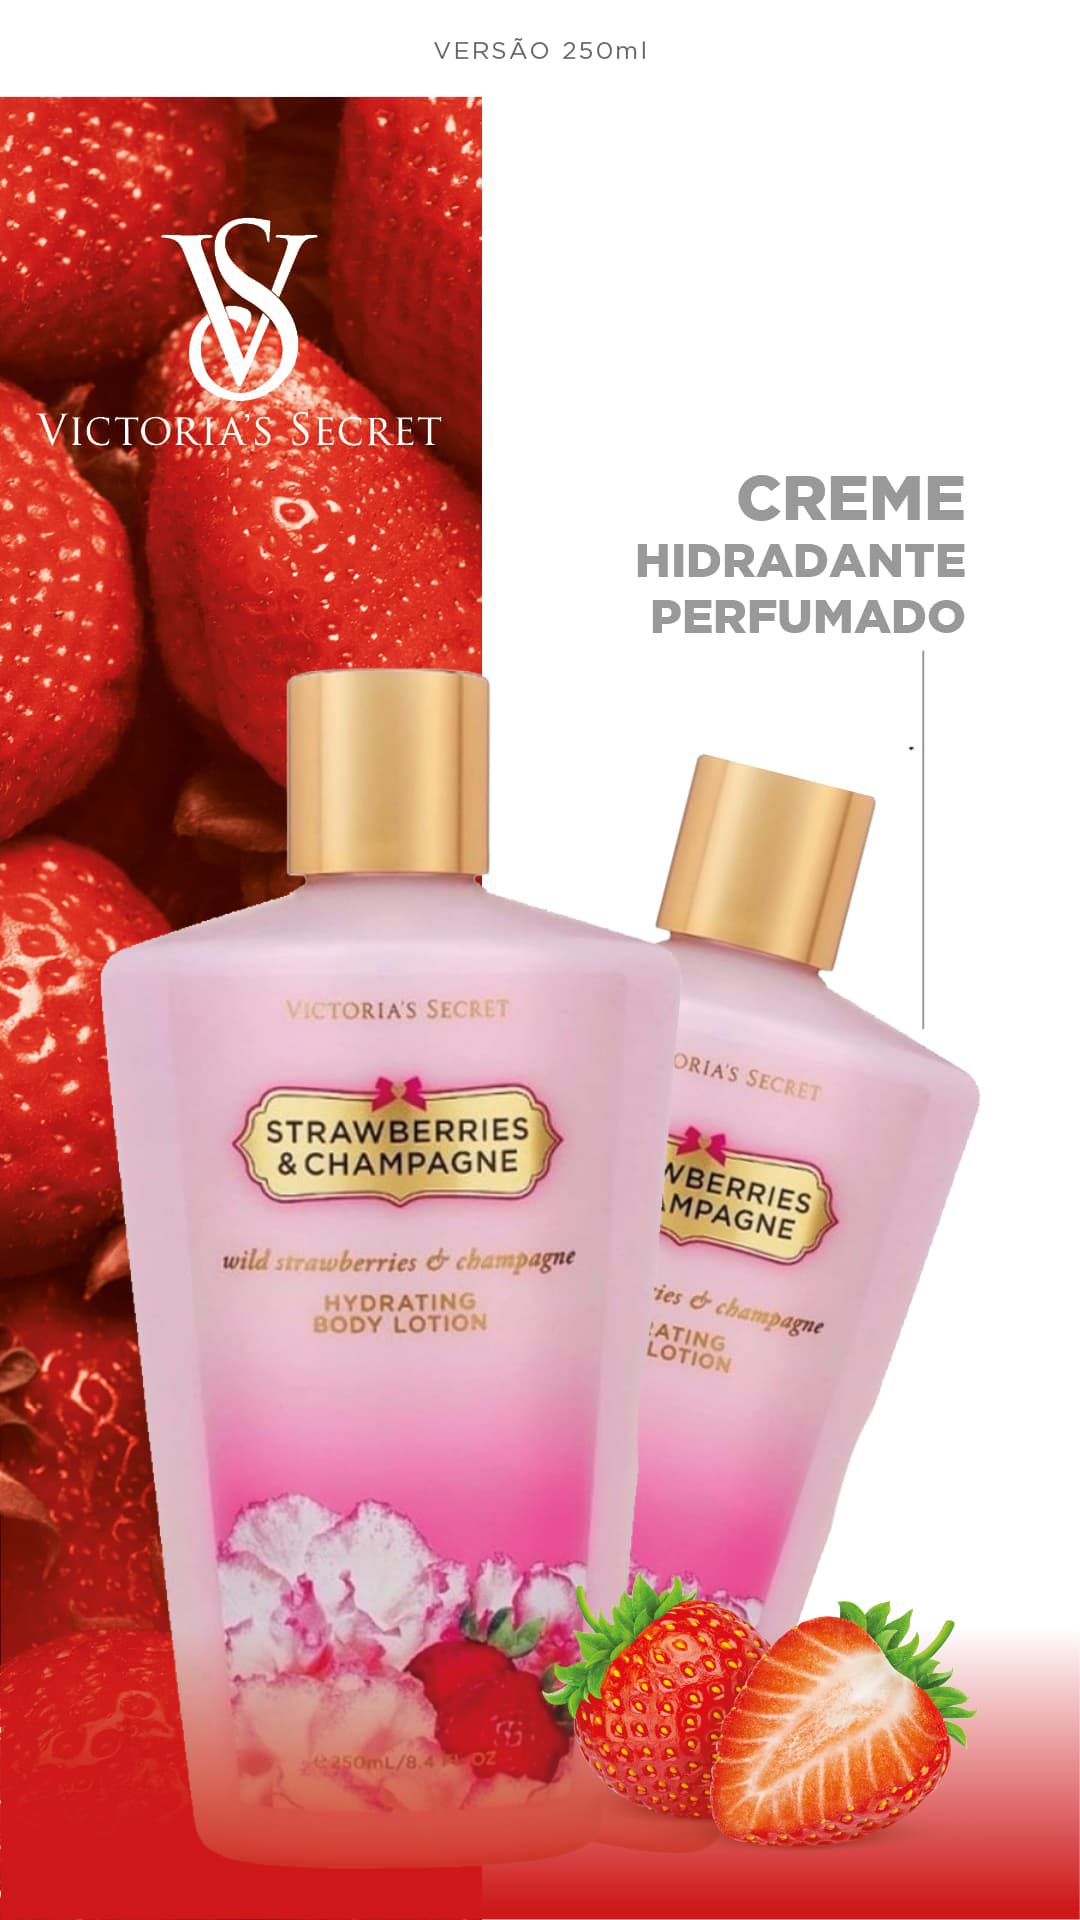 Creme Vitória Secrets 250ml | Morango & Champagne | STRAWBERRIES - Perfumes  Top de Vendas Para Revenda, Cadastre-se!